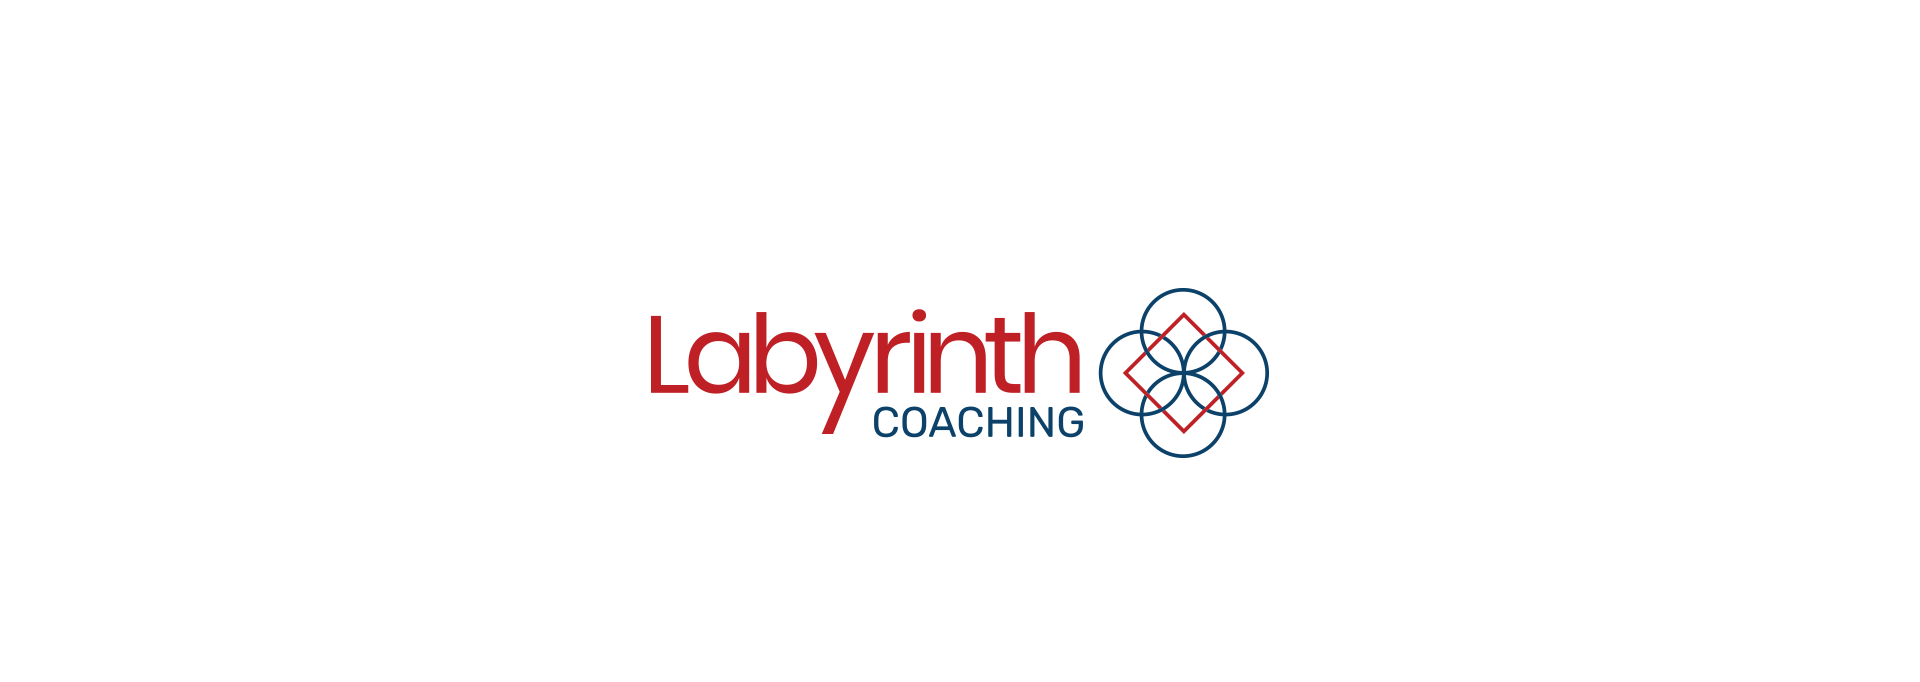 Labyrinth Coaching branding